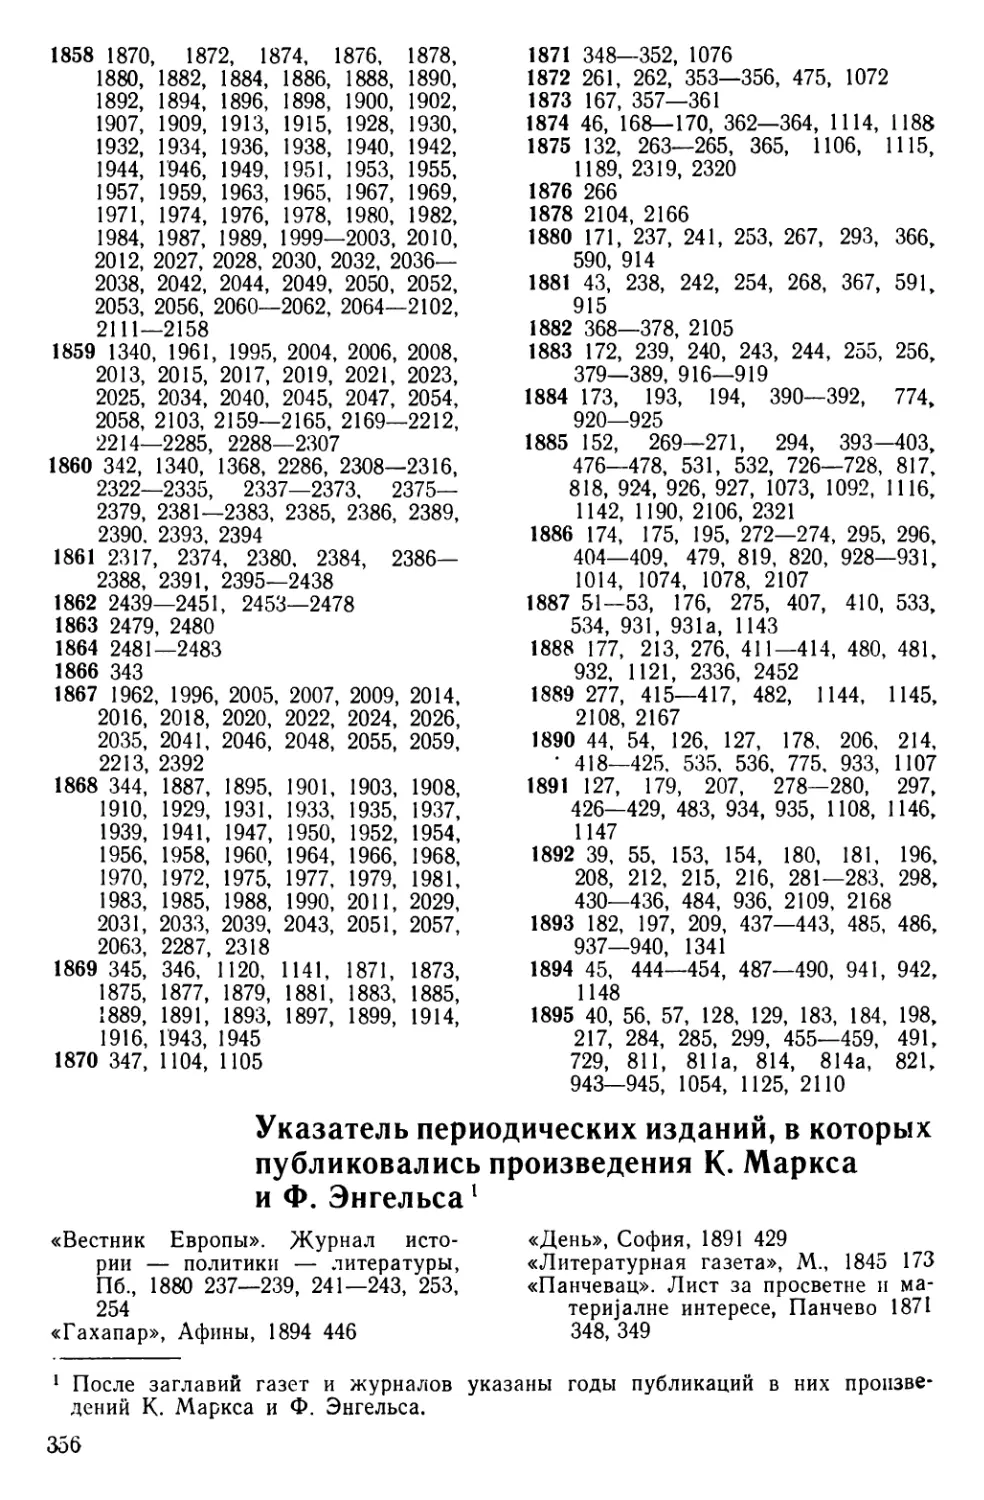 Указатель периодических изданий, в которых публиковались произведения К. Маркса и Ф. Энгельса